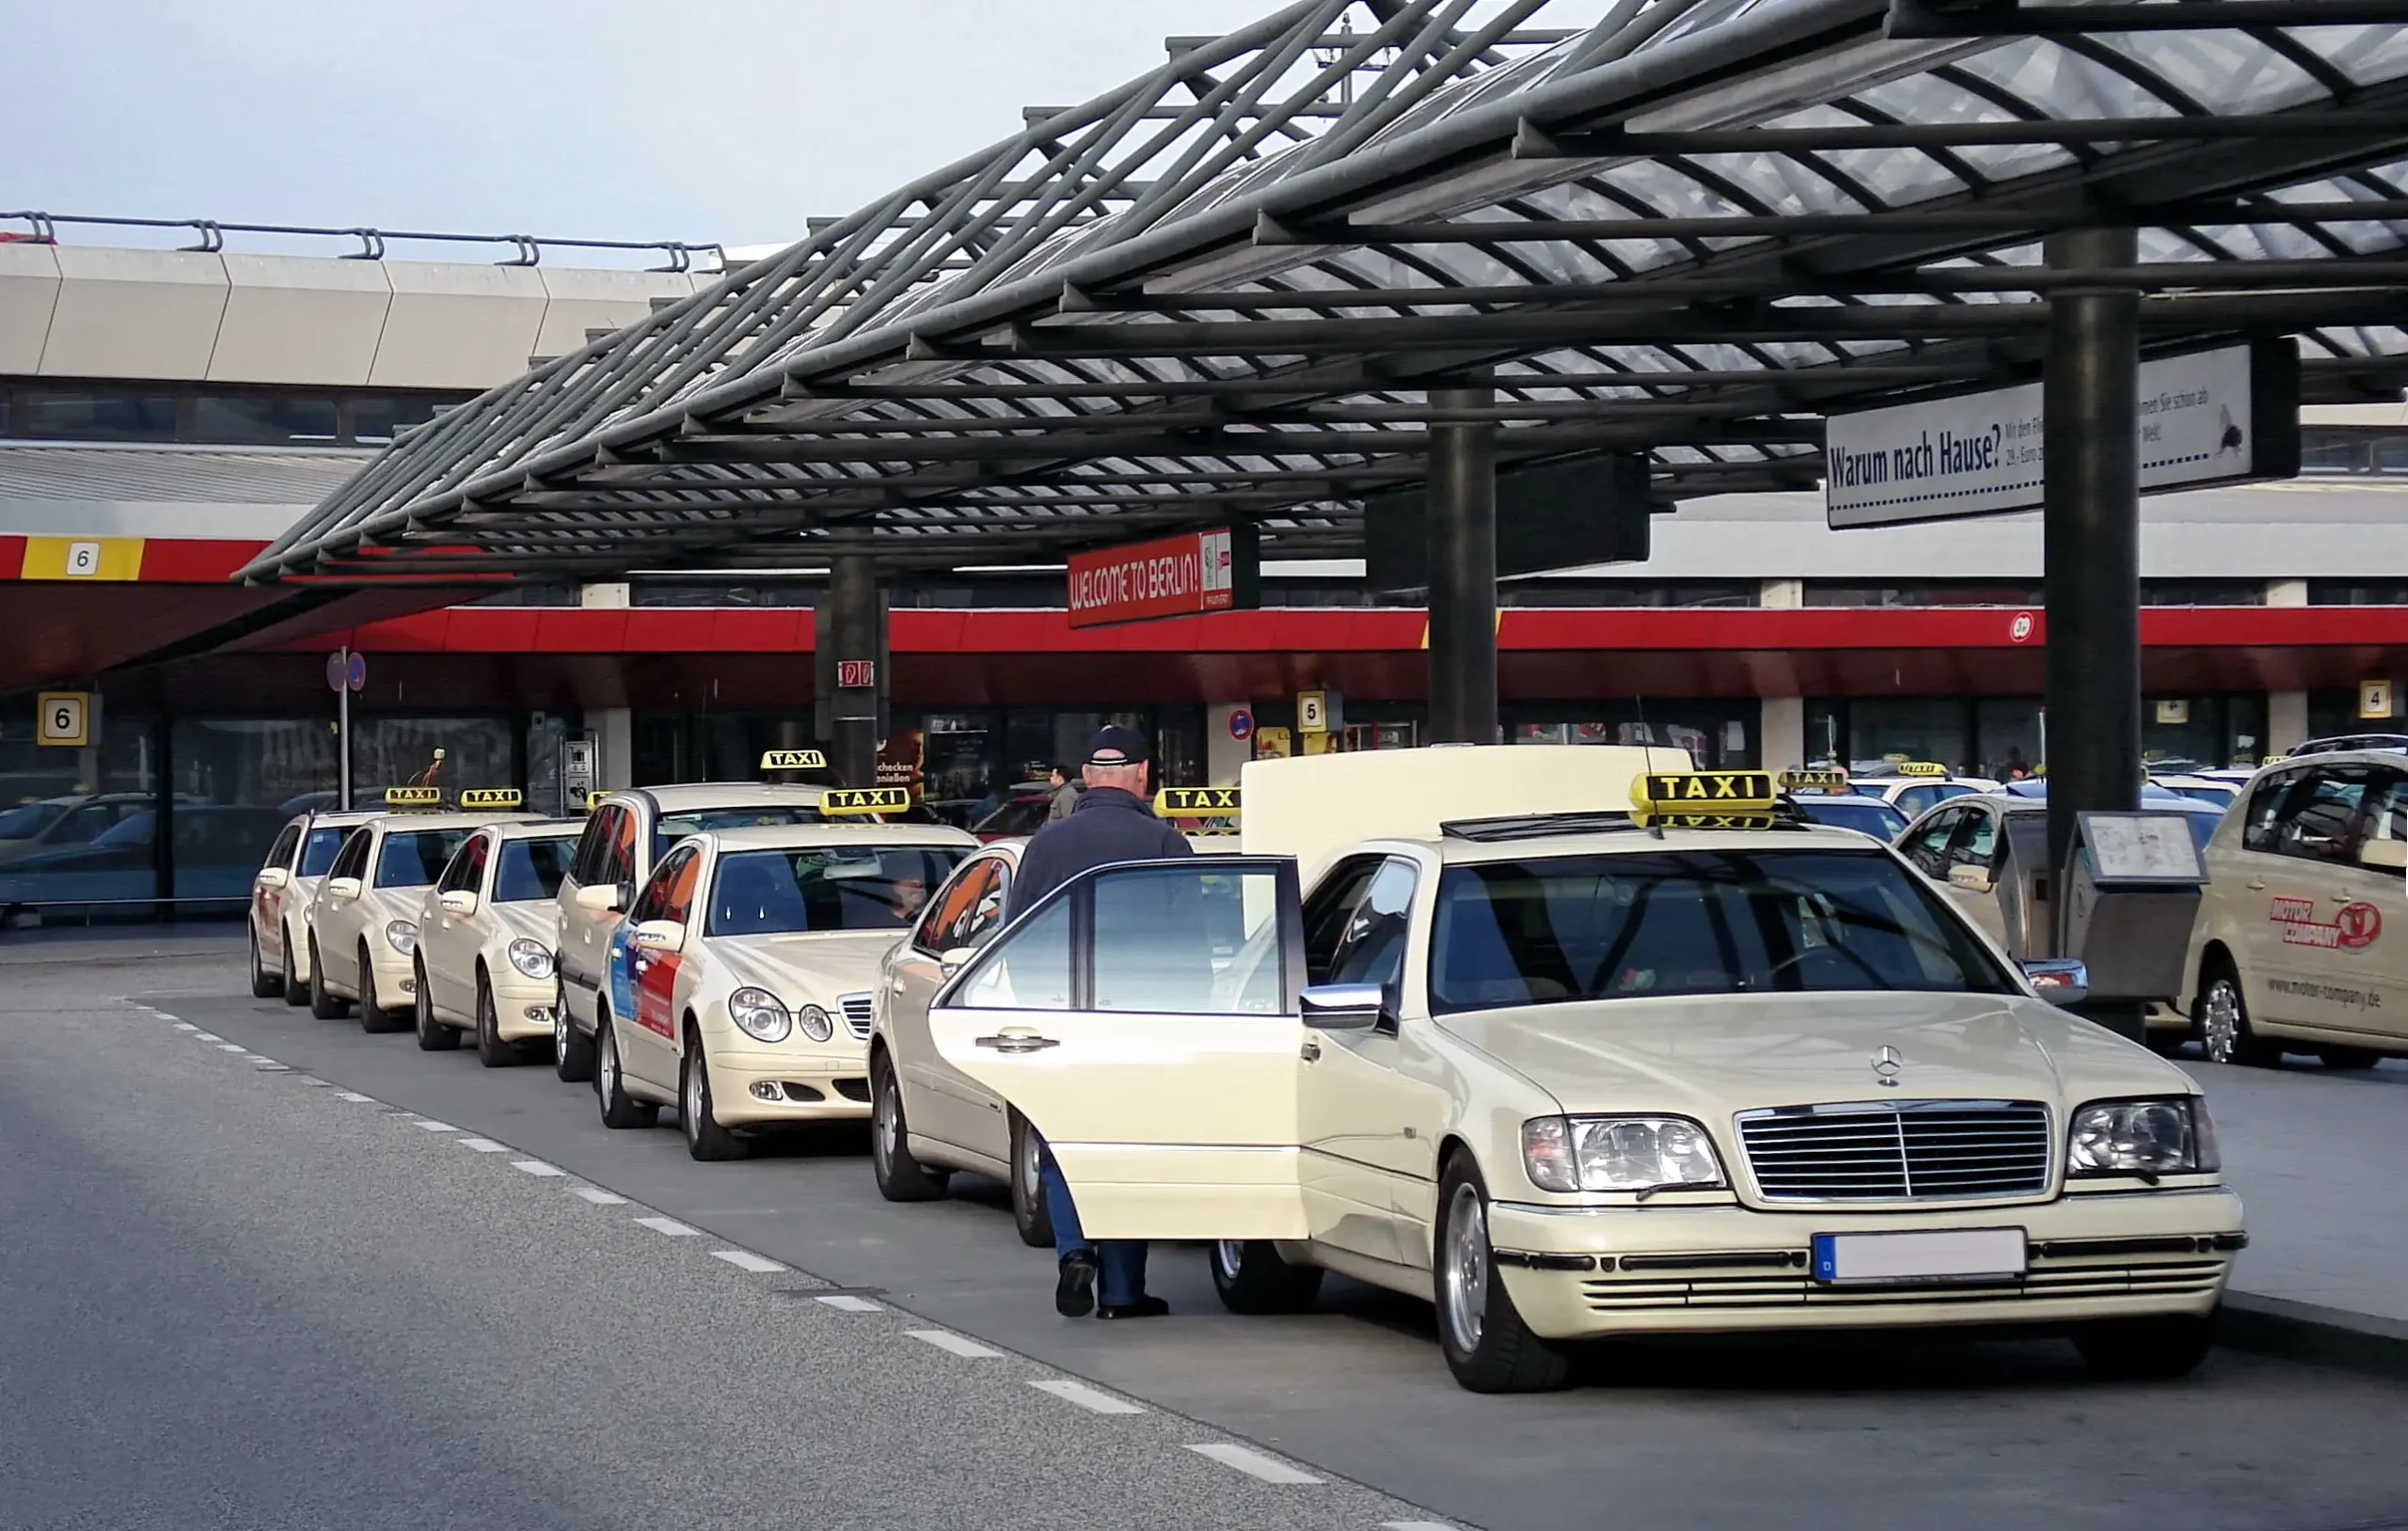 station de taxi - Cómo se dice servicio de taxi